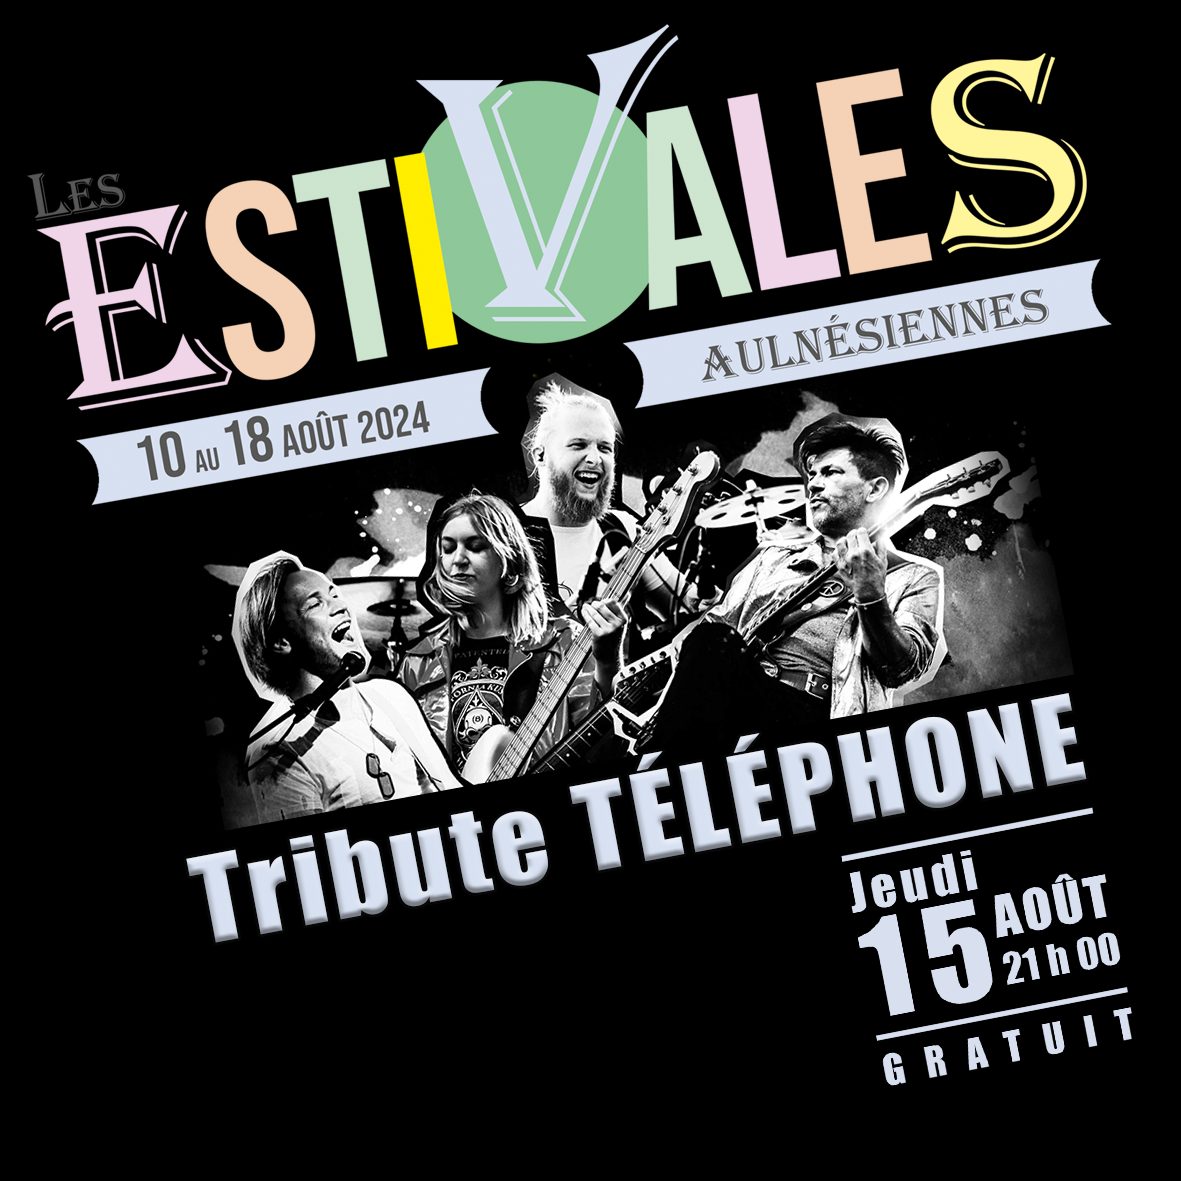 Les Estivales Aulnésiennes - Concert tribute Téléphone